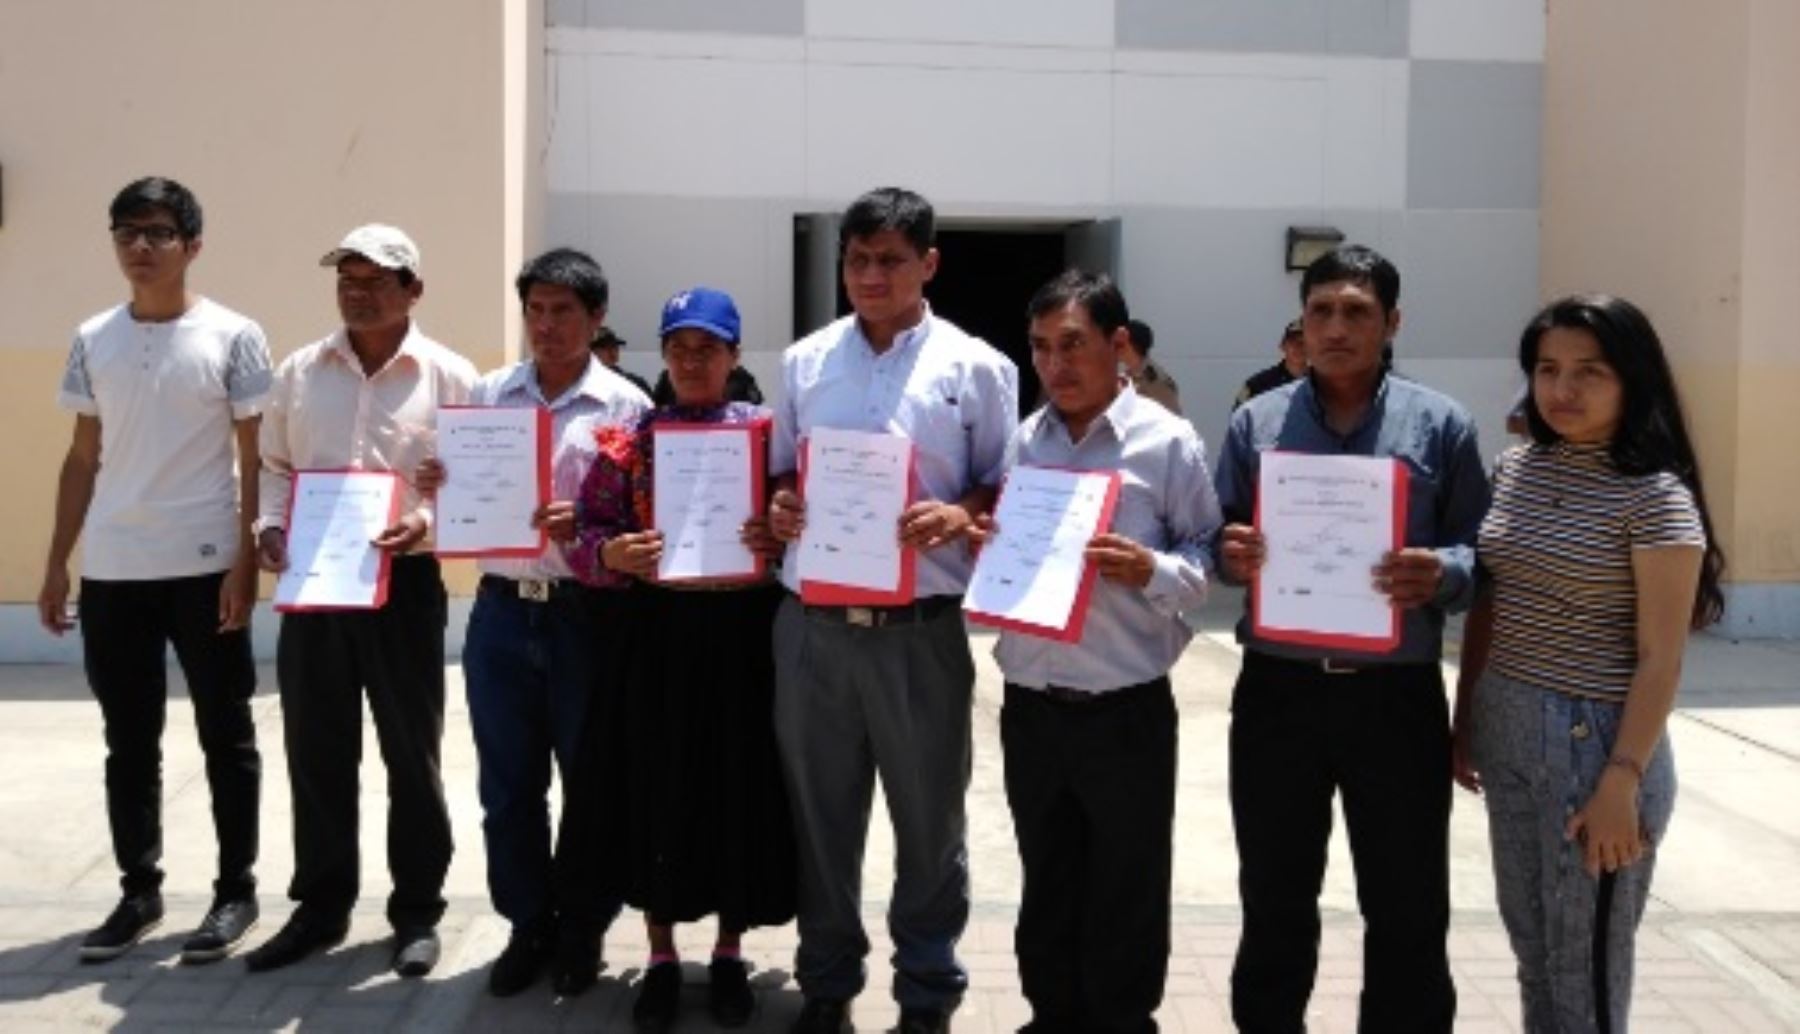 Los tres alcaldes provinciales y 35 distritales de la región Lambayeque, así como  los consejeros regionales recibieron hoy las credenciales del Jurado Electoral Especial (JEE) de Chiclayo que los acredita para gobernar para el periodo 2019-2022.